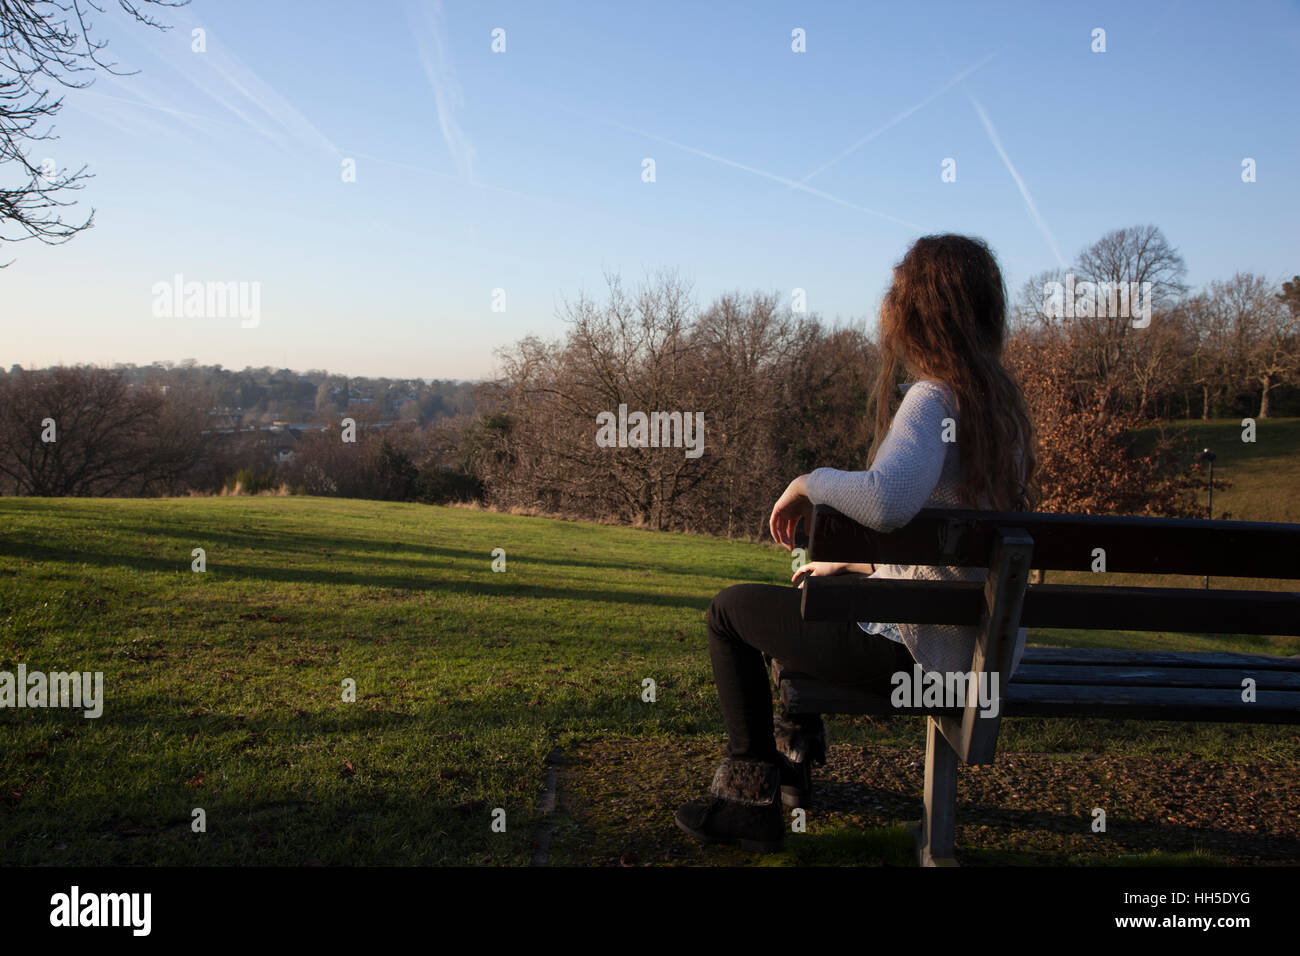 Nachdenkliche junge Frau sitzt allein auf einer Bank, Blick in die Ferne, in einer ruhigen Lage mit einem hellen Himmel und Bäume. Stockfoto